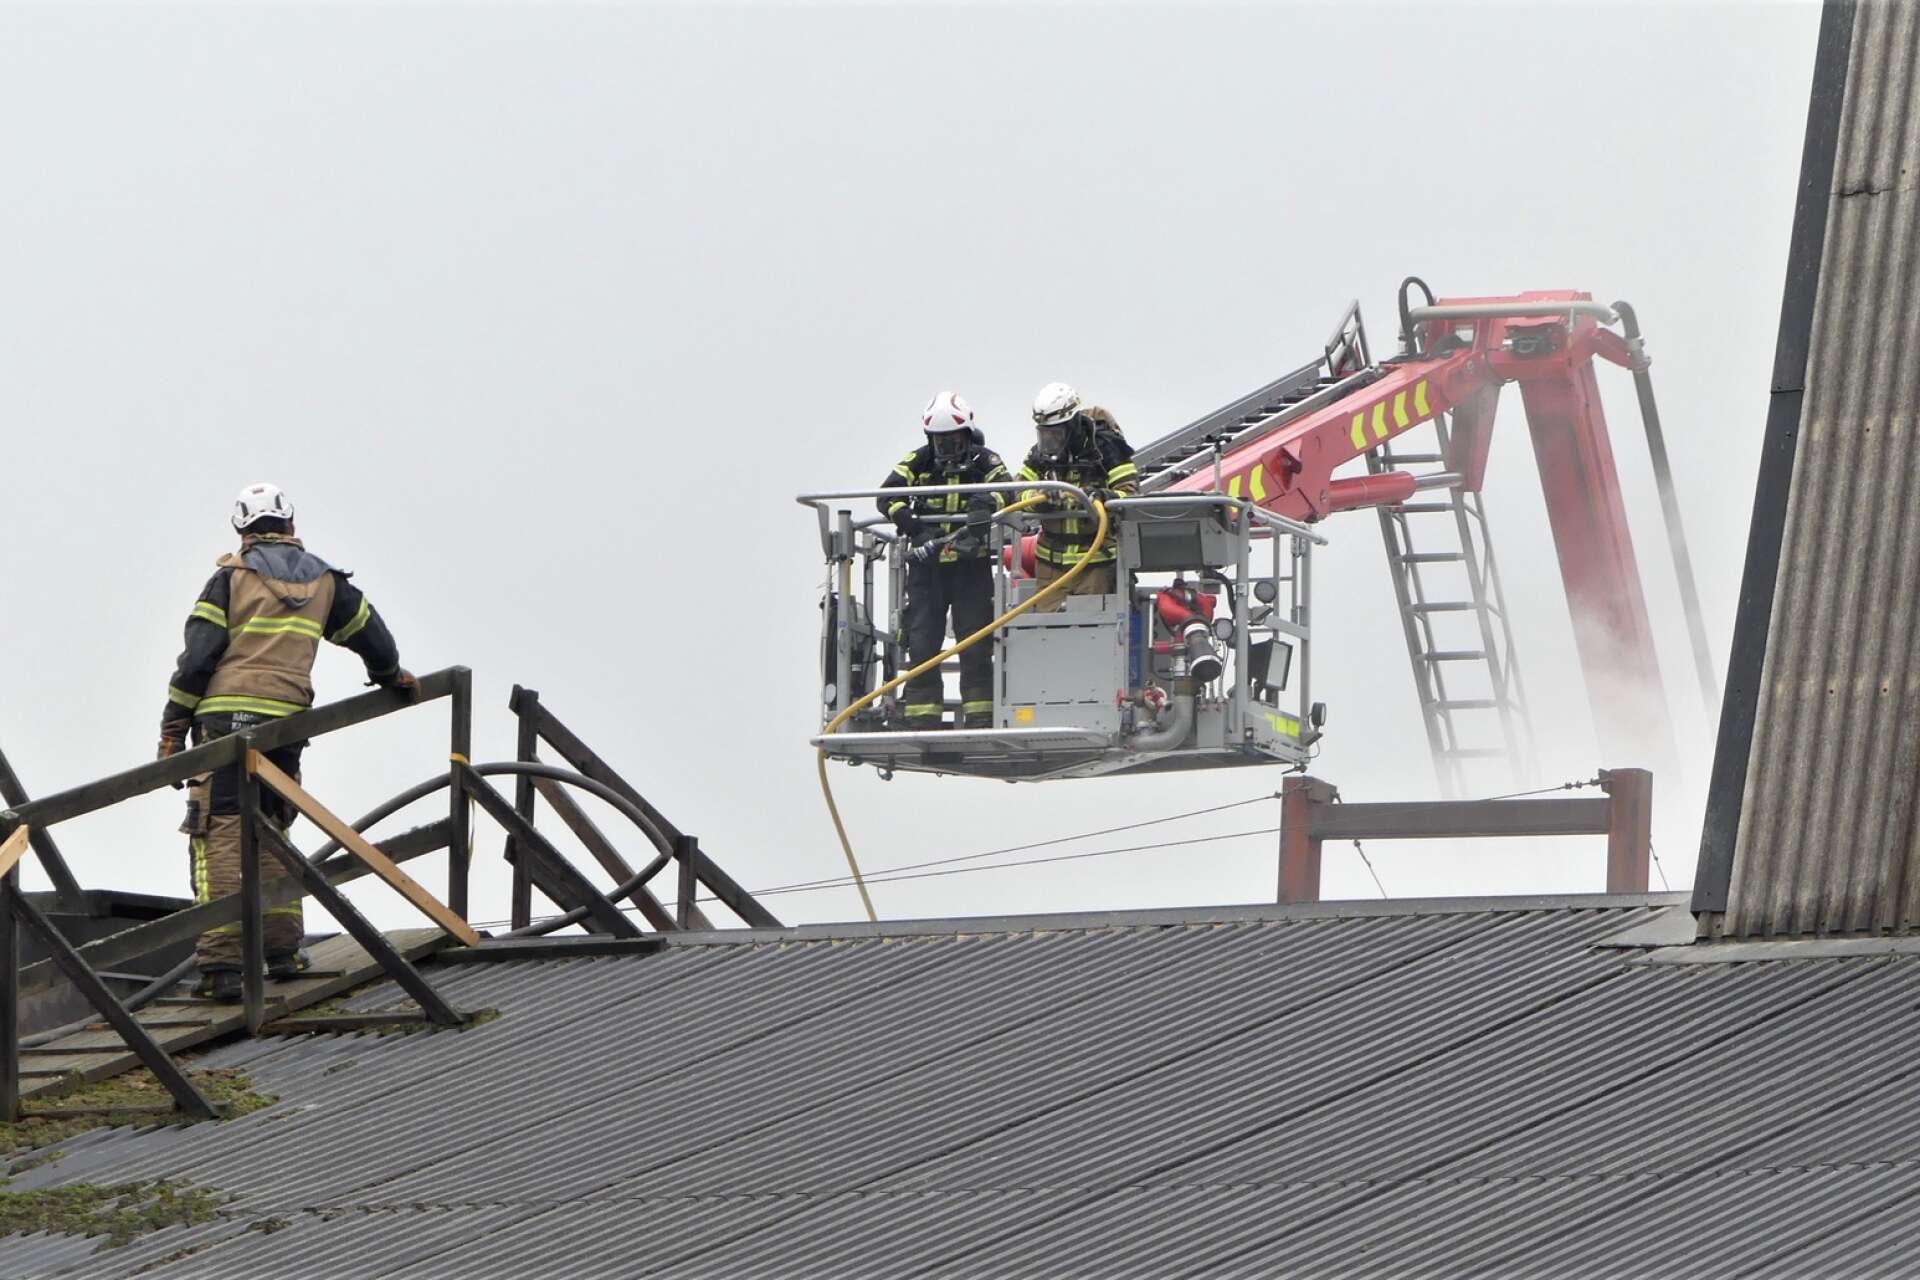 Vid 12-tiden började man bryta upp taket över eldhärden så att man kunde börja bespruta elden med vatten.